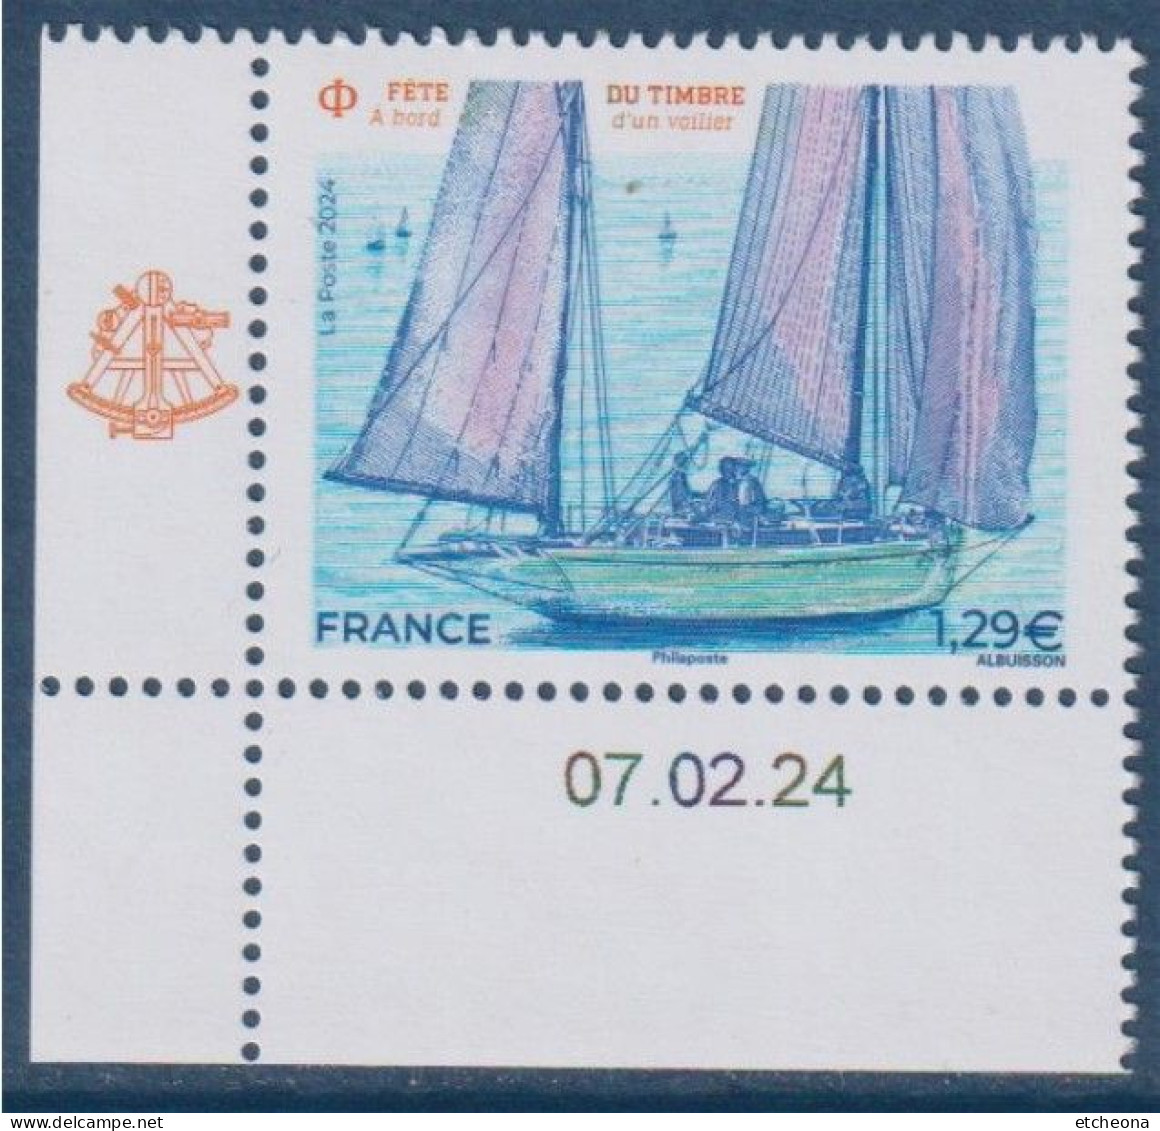 Fête Du Timbre 2024 "A Bord D'un Voilier" En Coin Avec La Date 07.02.24 Neuf Gommé - Tag Der Briefmarke